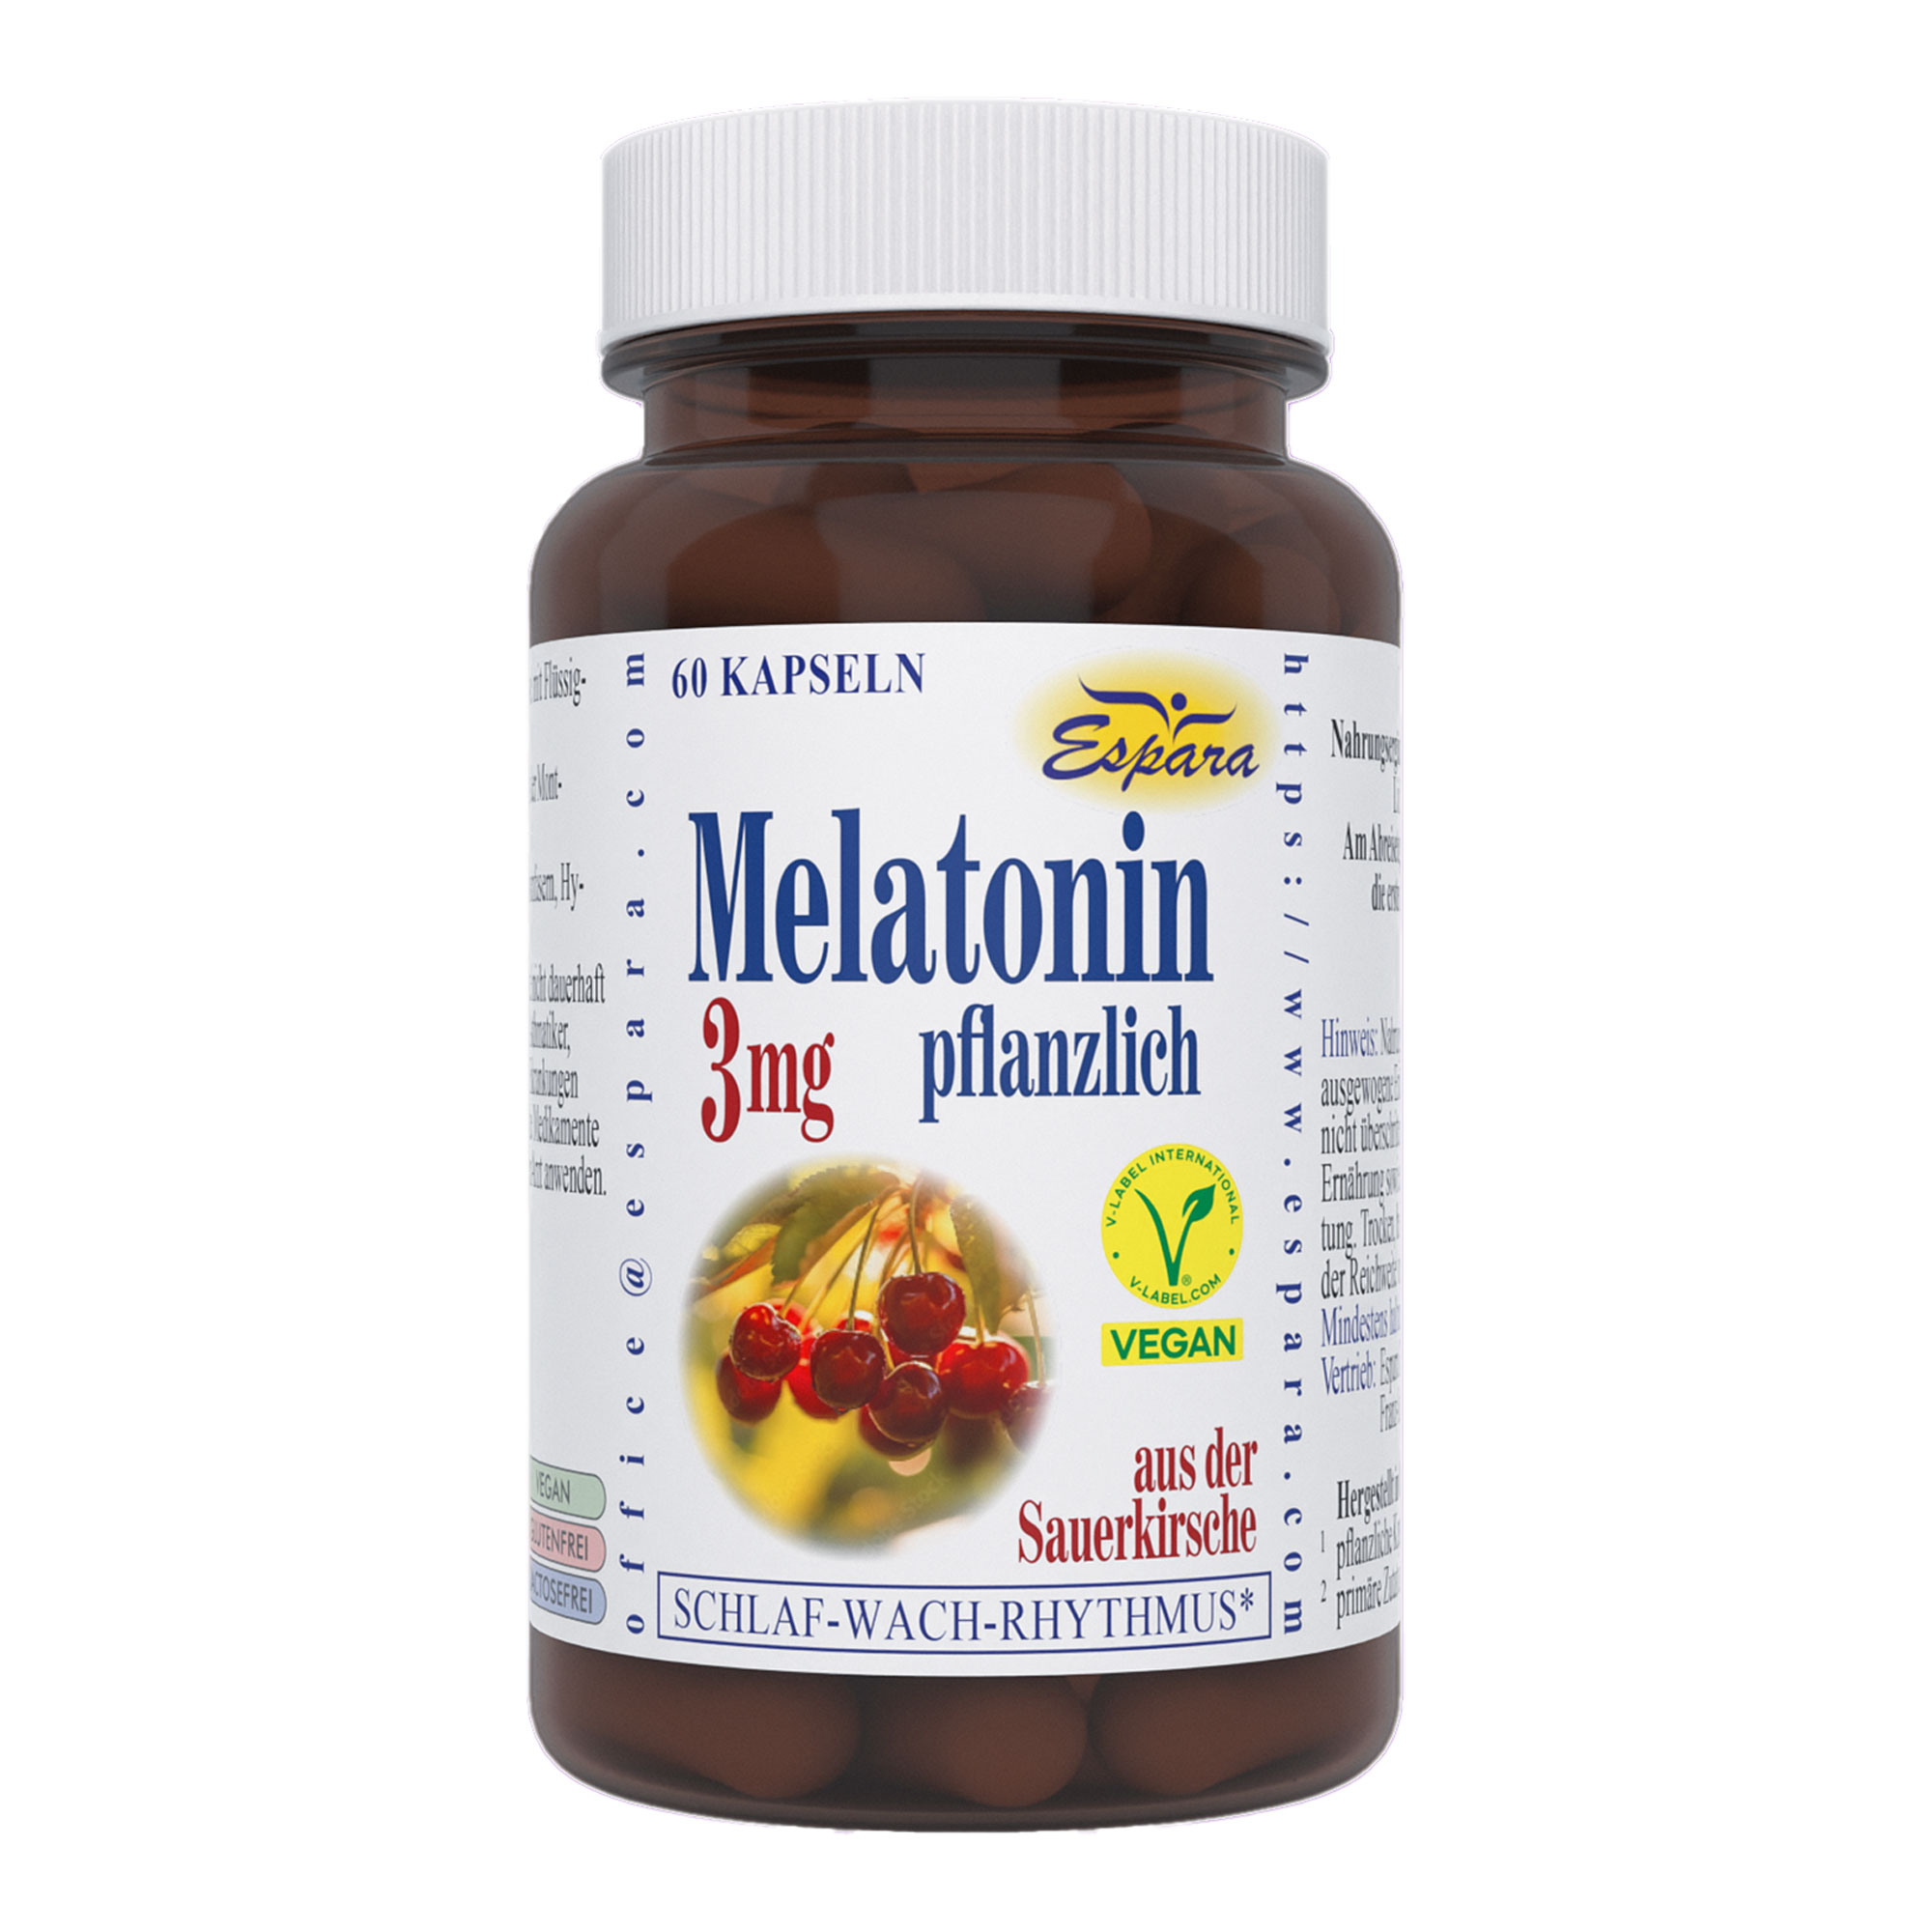 Nahrungsergänzungsmittel mit natürlichem Melatonin.